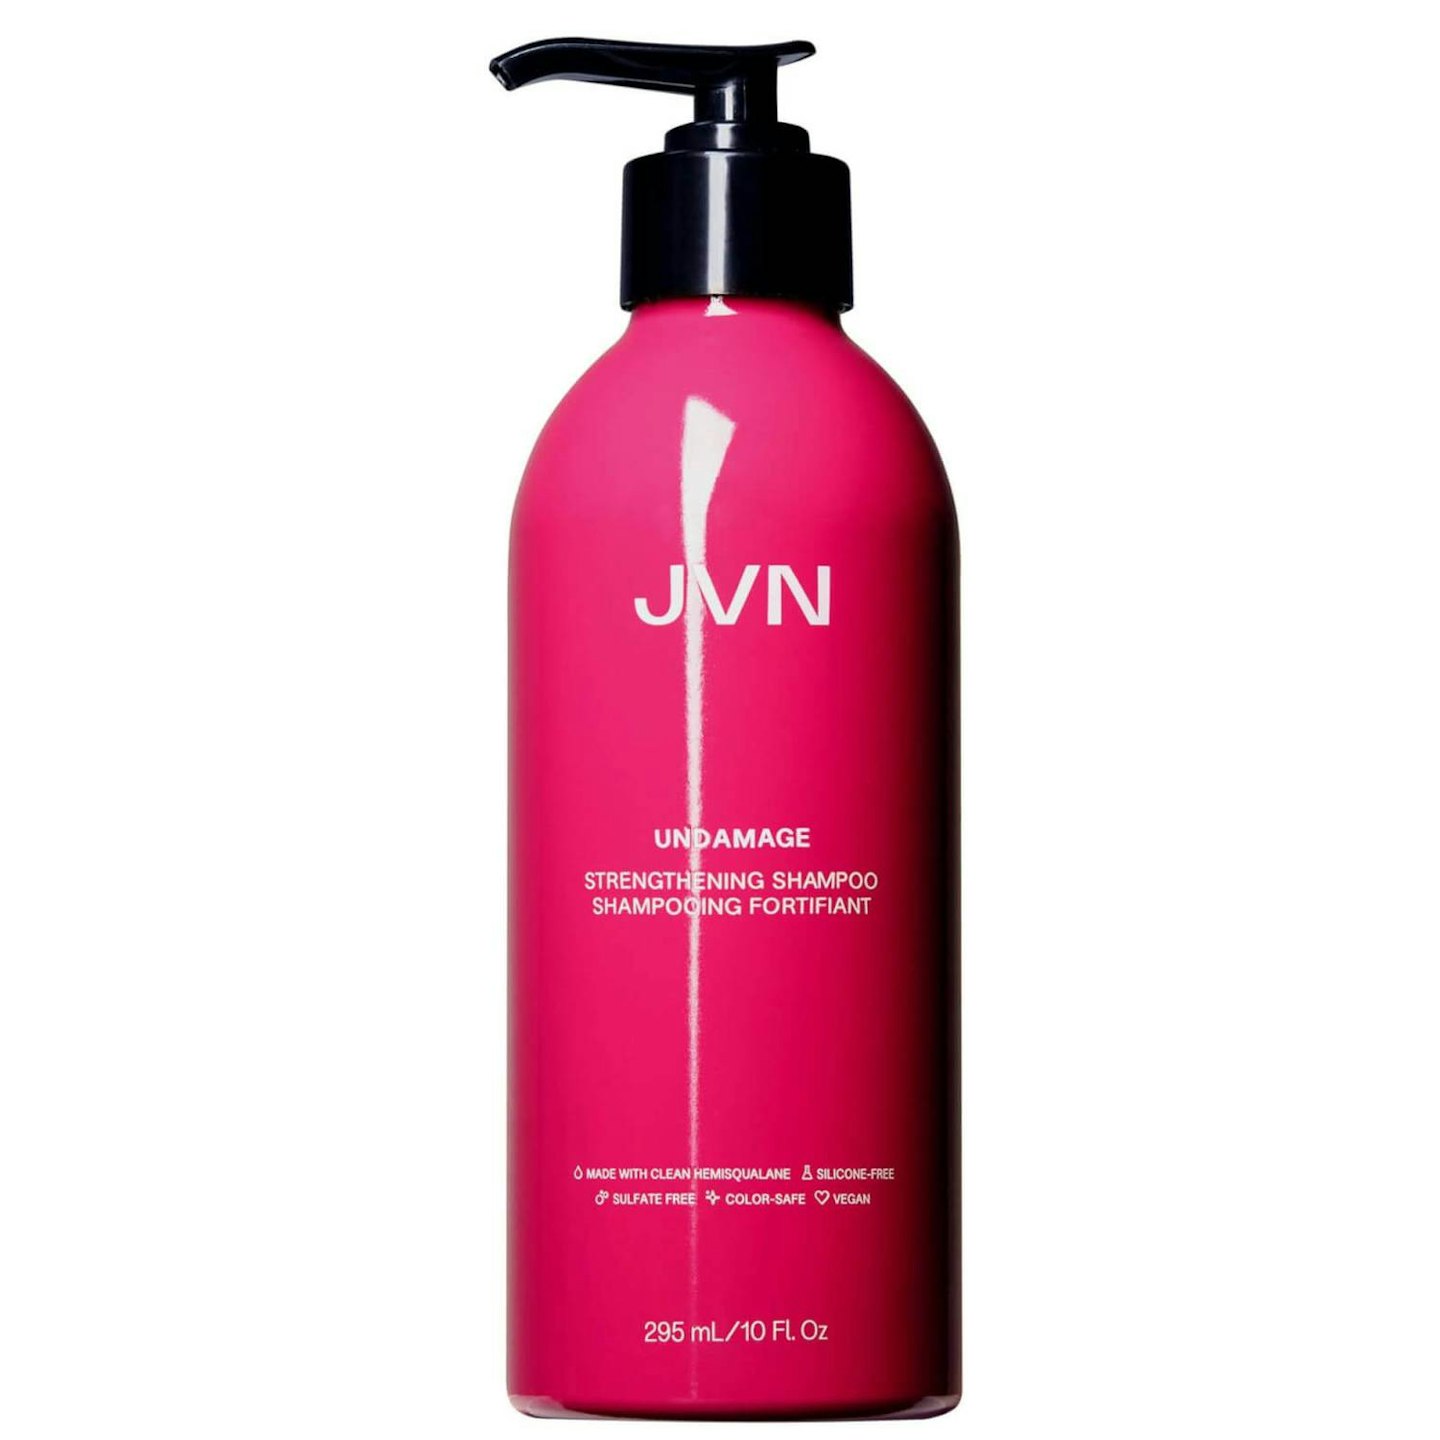 JVN shampoo for damaged hair